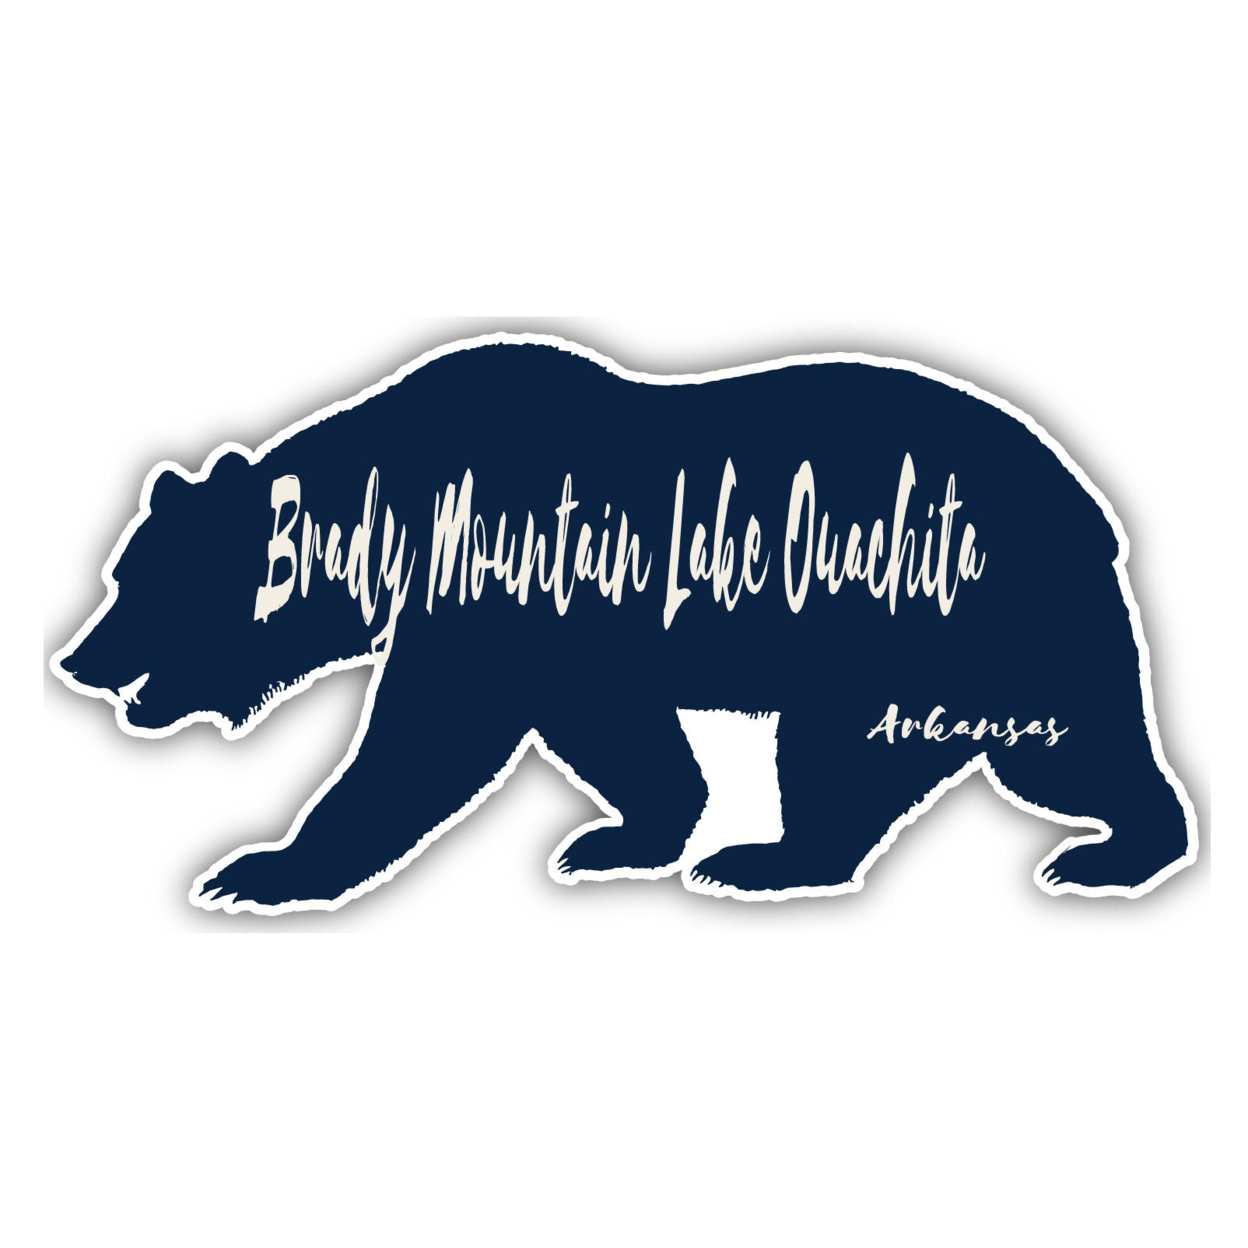 Brady Mountain Lake Ouachita Arkansas Souvenir Decorative Stickers (Choose Theme And Size) - Single Unit, 10-Inch, Tent